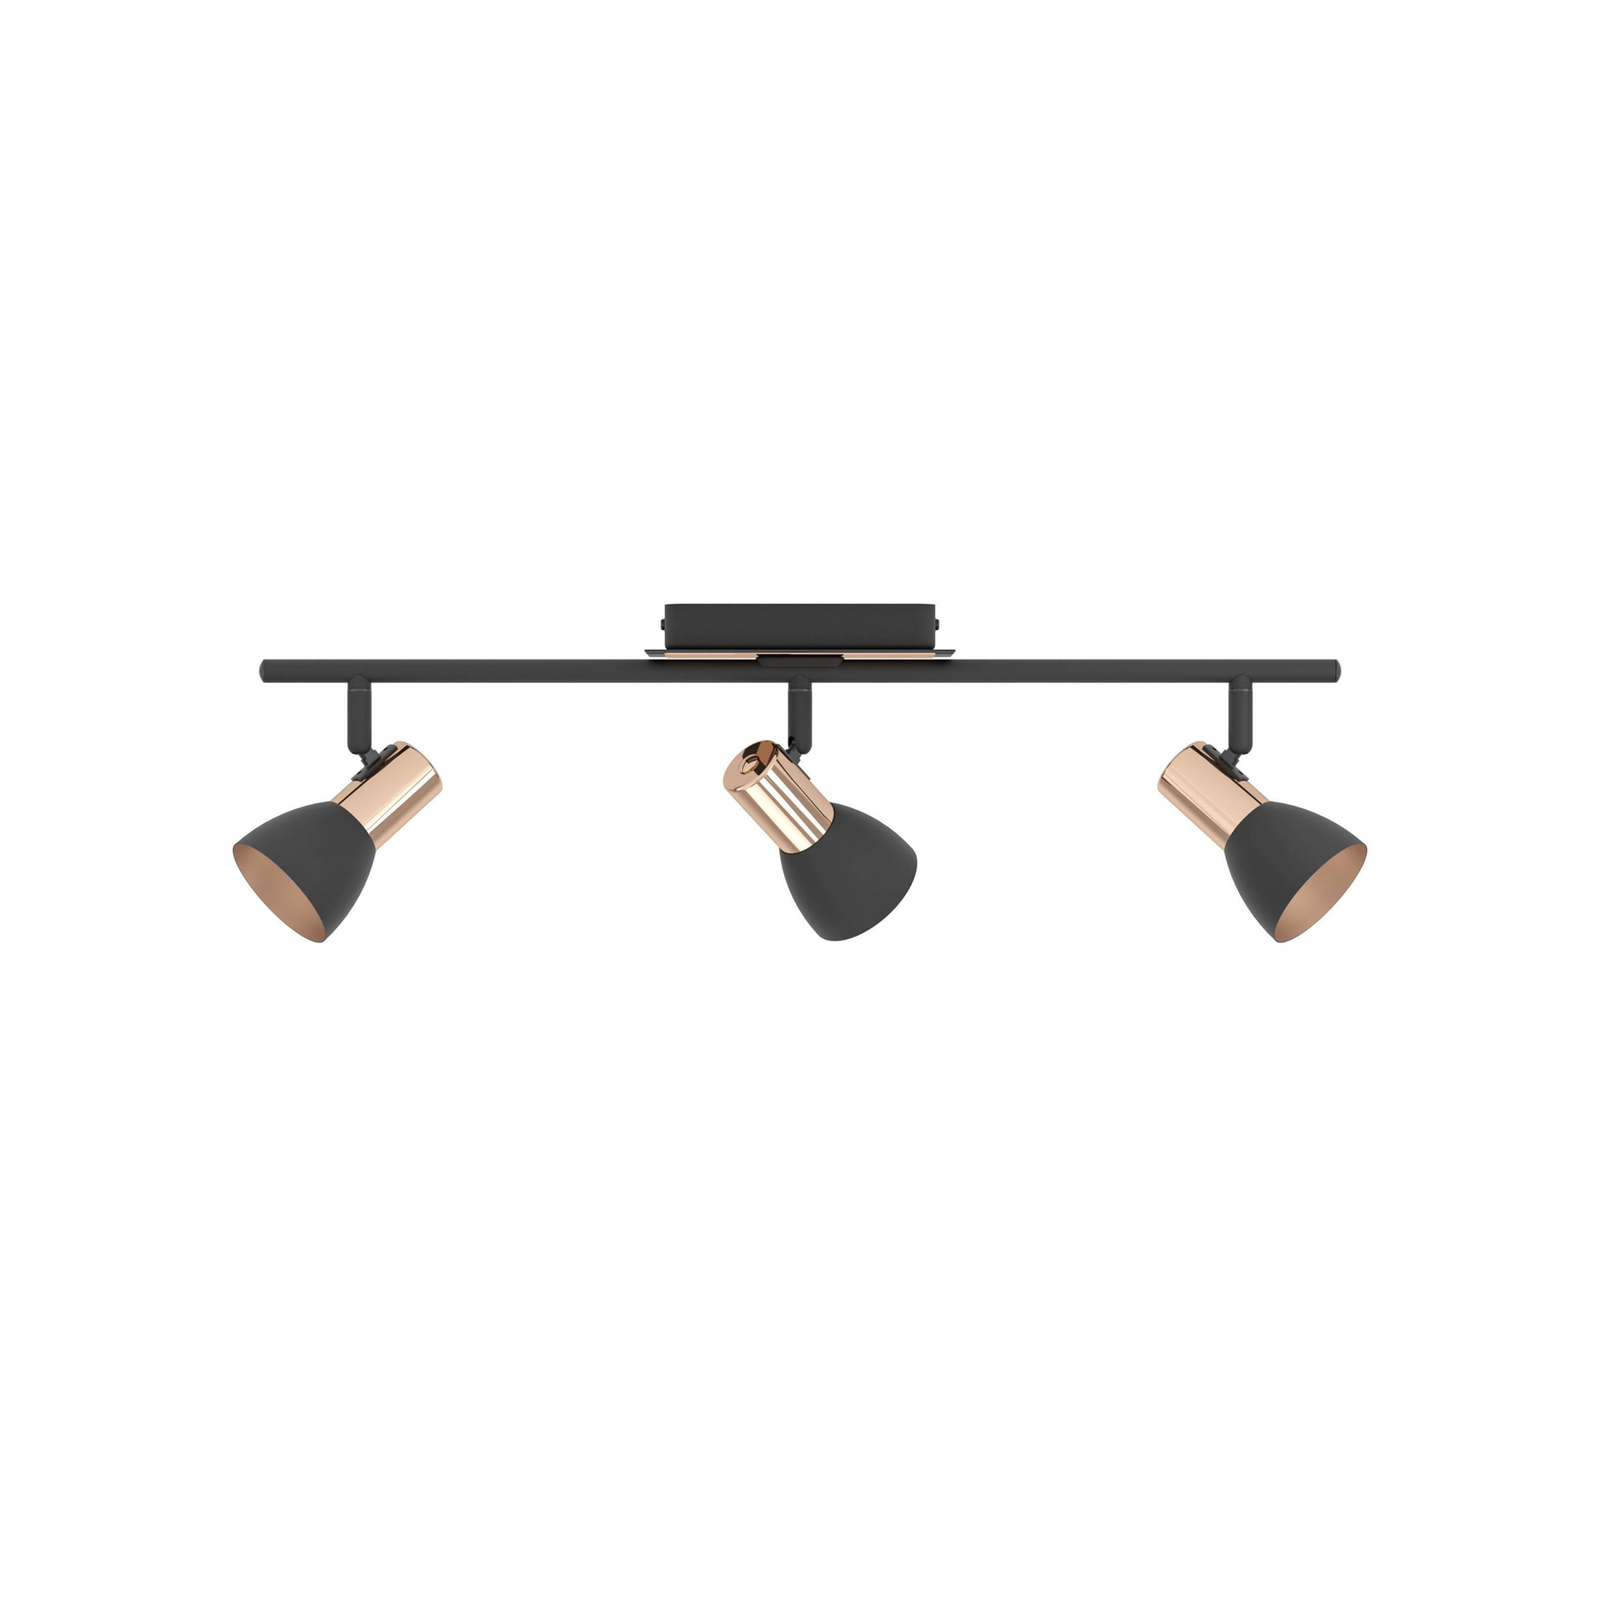 LED-Deckenstrahler Barnham, Länge 58,5 cm, schwarz/kupfer